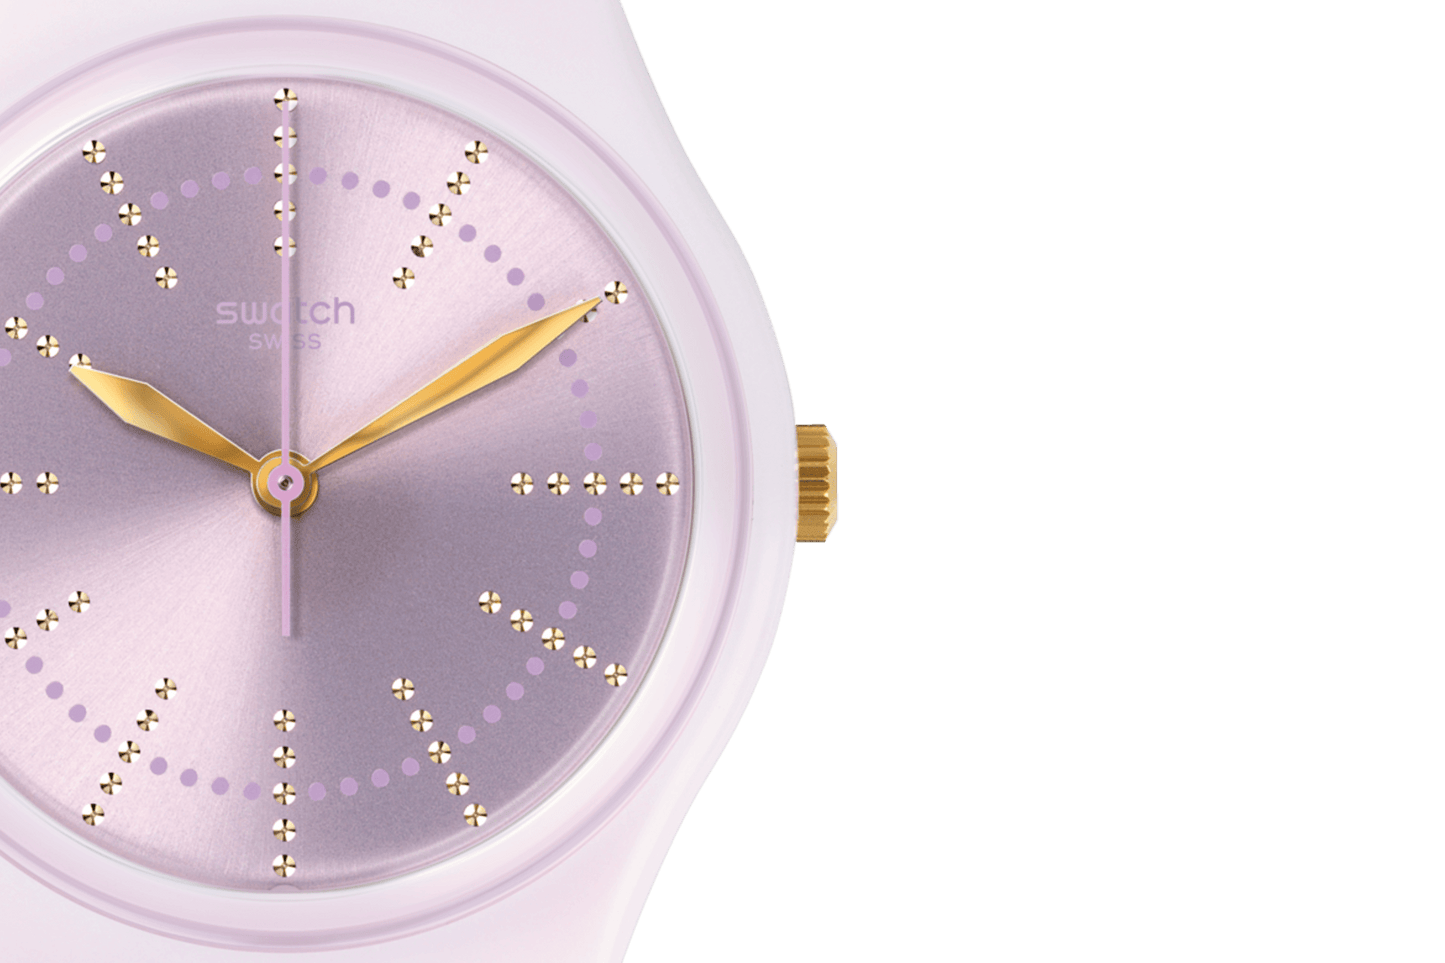 Orologio Swatch - GP148 - Simmi gioiellerie -Orologi